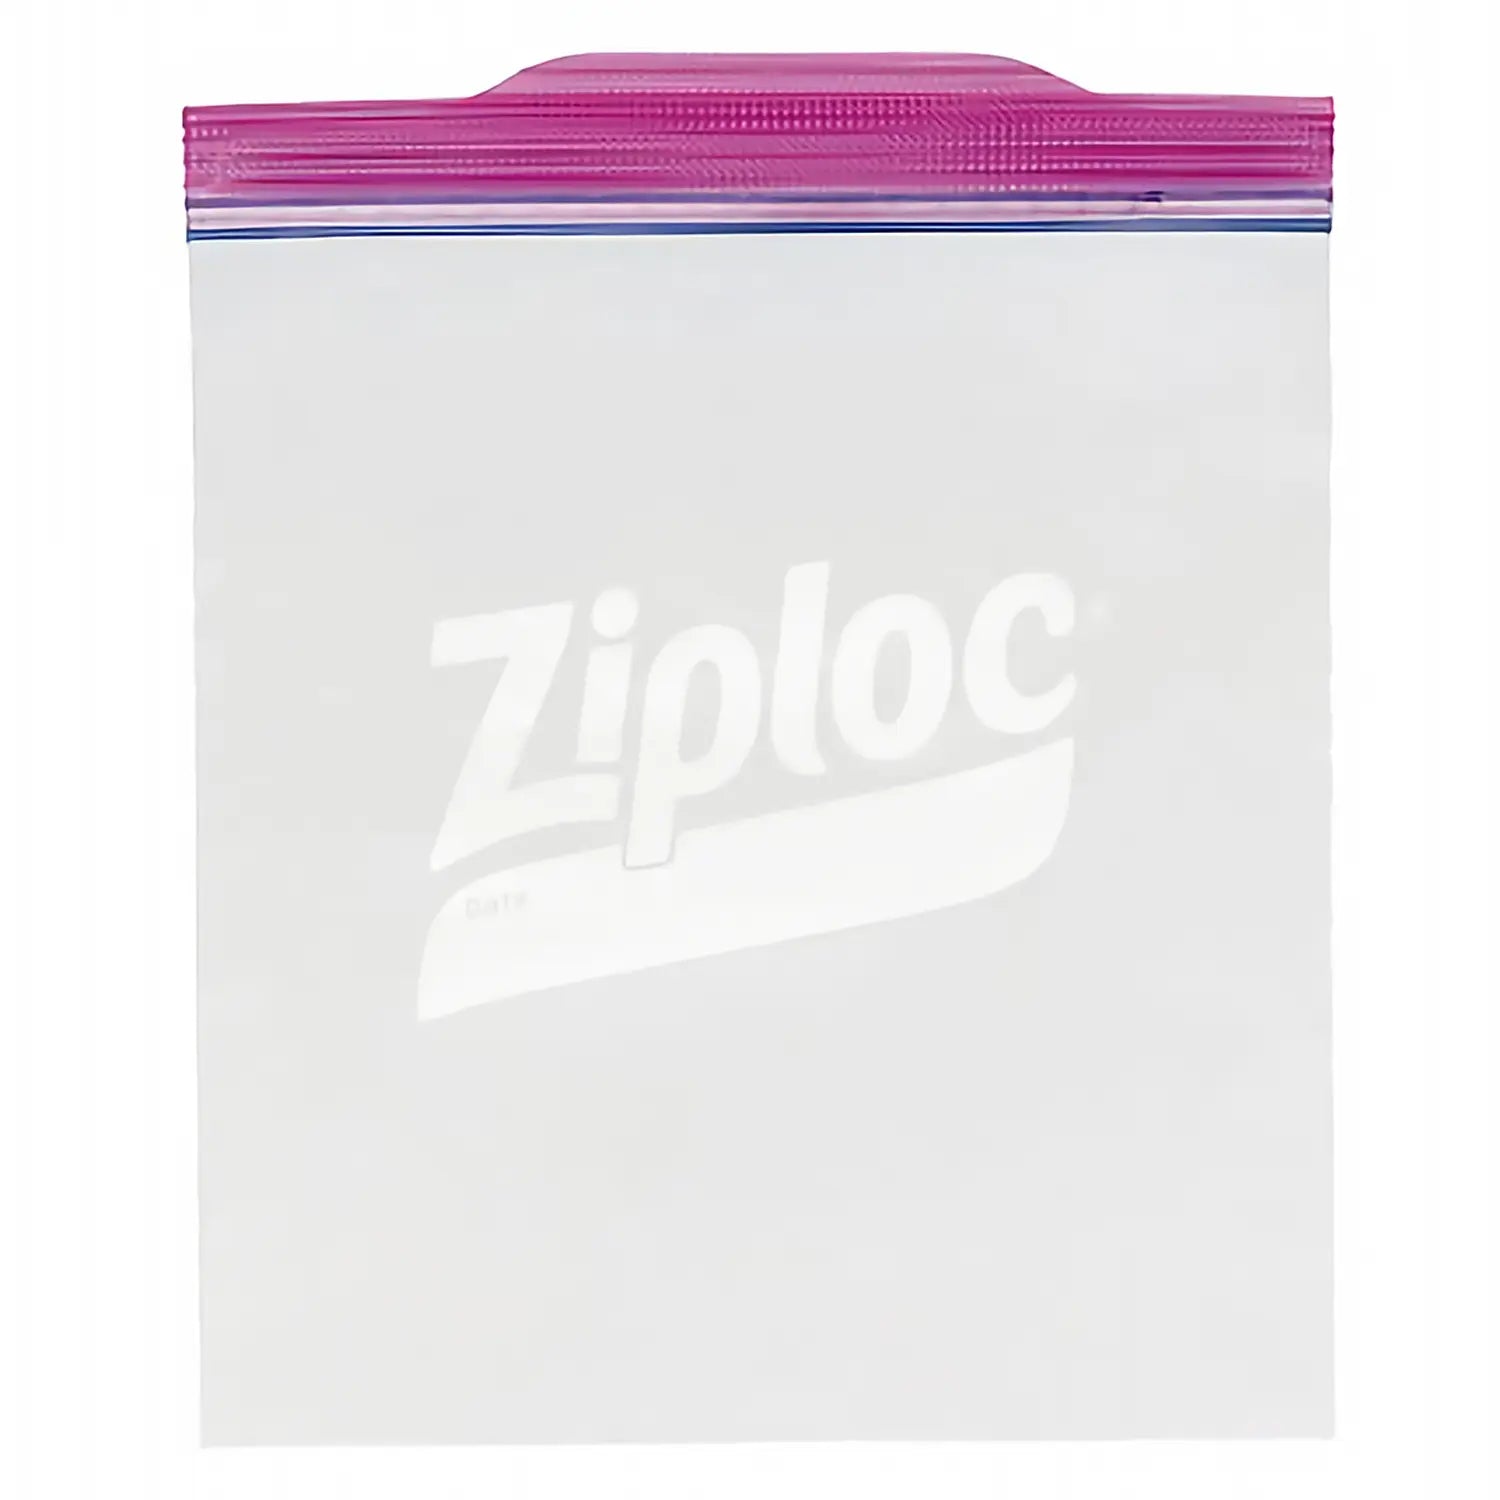 Ziploc® Polypropylene Twist' n Loc Storage Container - Globalkitchen Japan